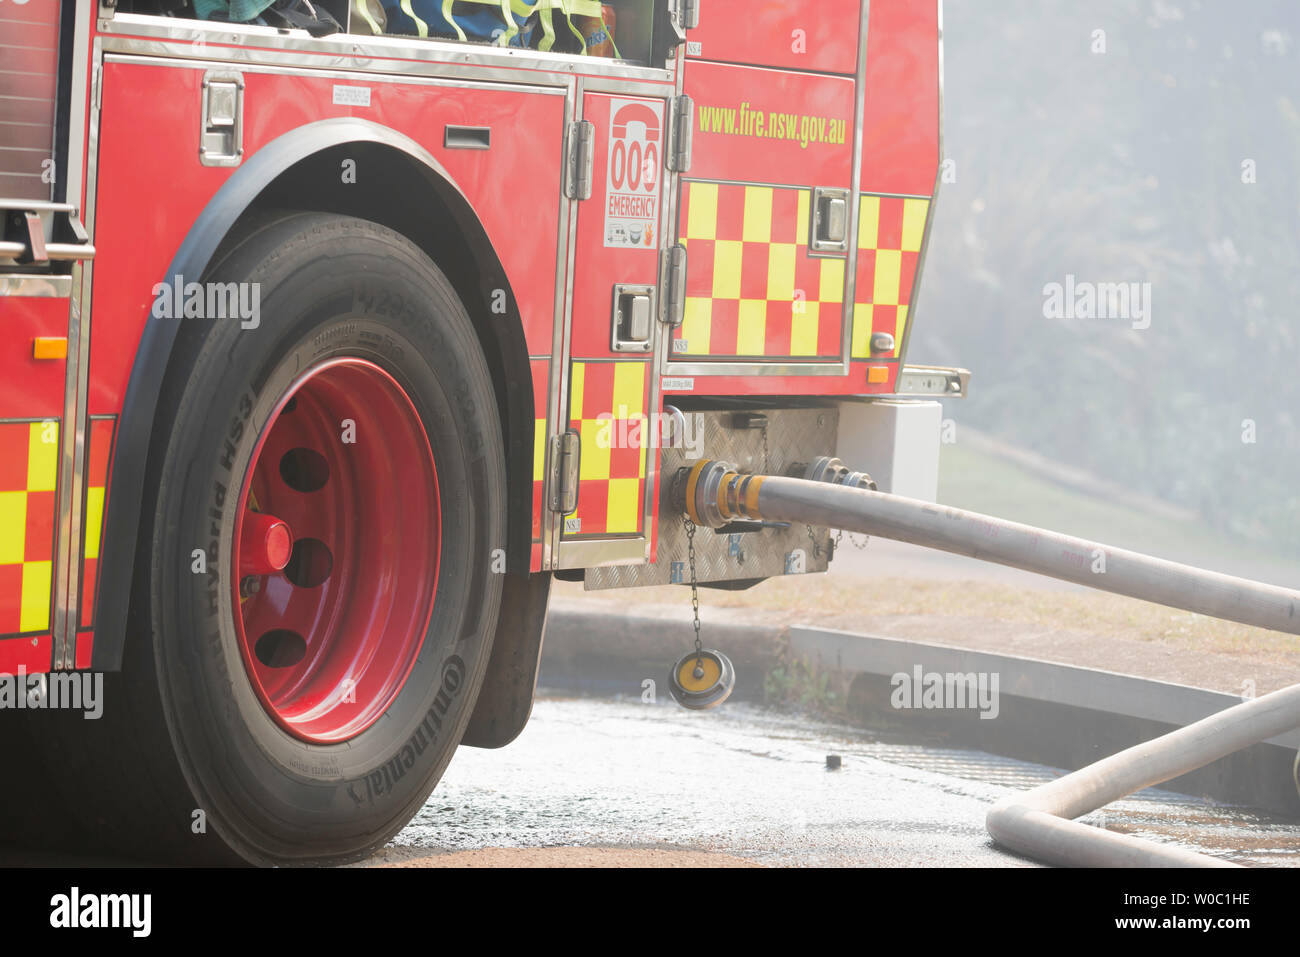 Un Nuovo Galles del Sud di soccorso ed antincendio carrello con manichette antincendio collegate, parcheggiato in una piena di fumo suburban street durante una riduzione del pericolo di bruciare a Sydney Foto Stock